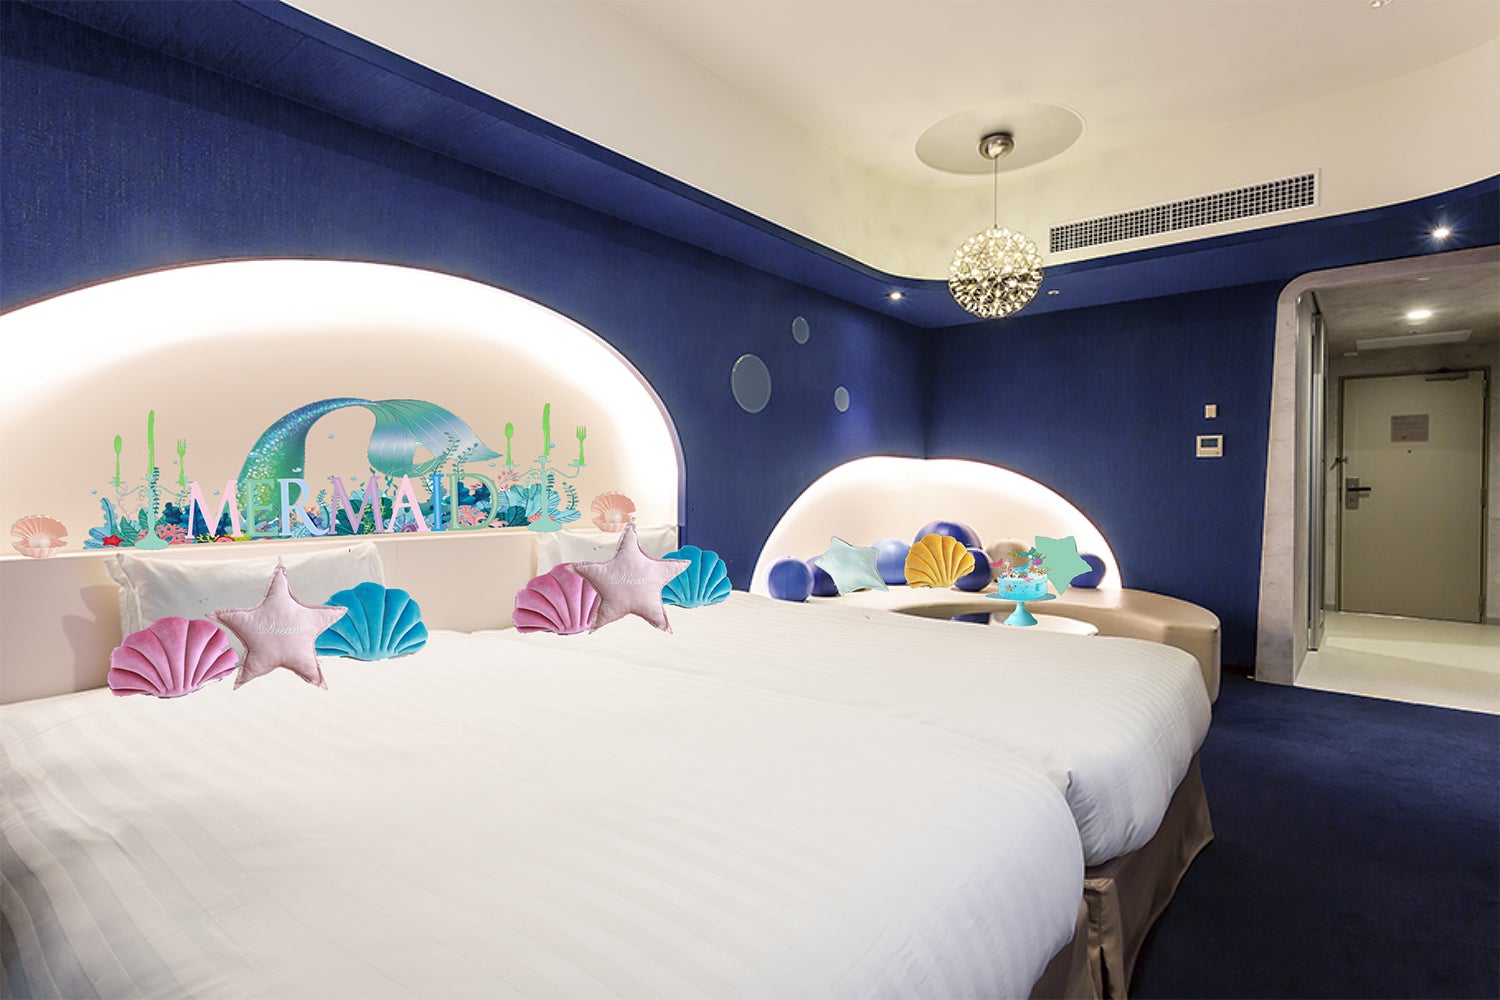 東京ベイ東急ホテル マーメイドルーム 海の世界 イメージのフォトジェニック部屋に宿泊 女子旅プレス